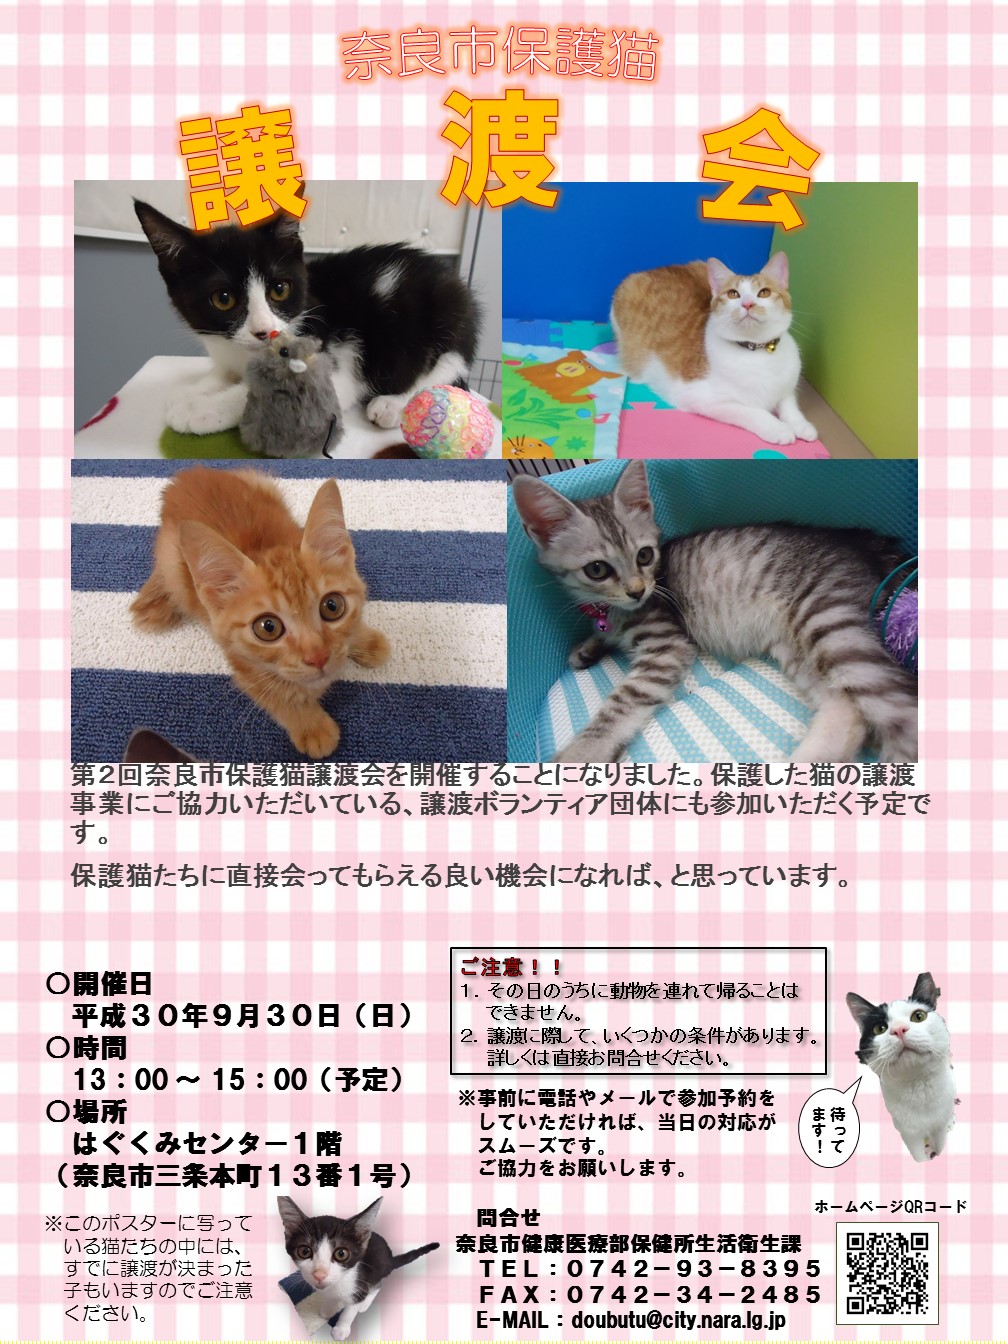 保健所で収容した犬猫たちと新しい生活を 第2回奈良市保護猫譲渡会を開催します 奈良市役所のプレスリリース